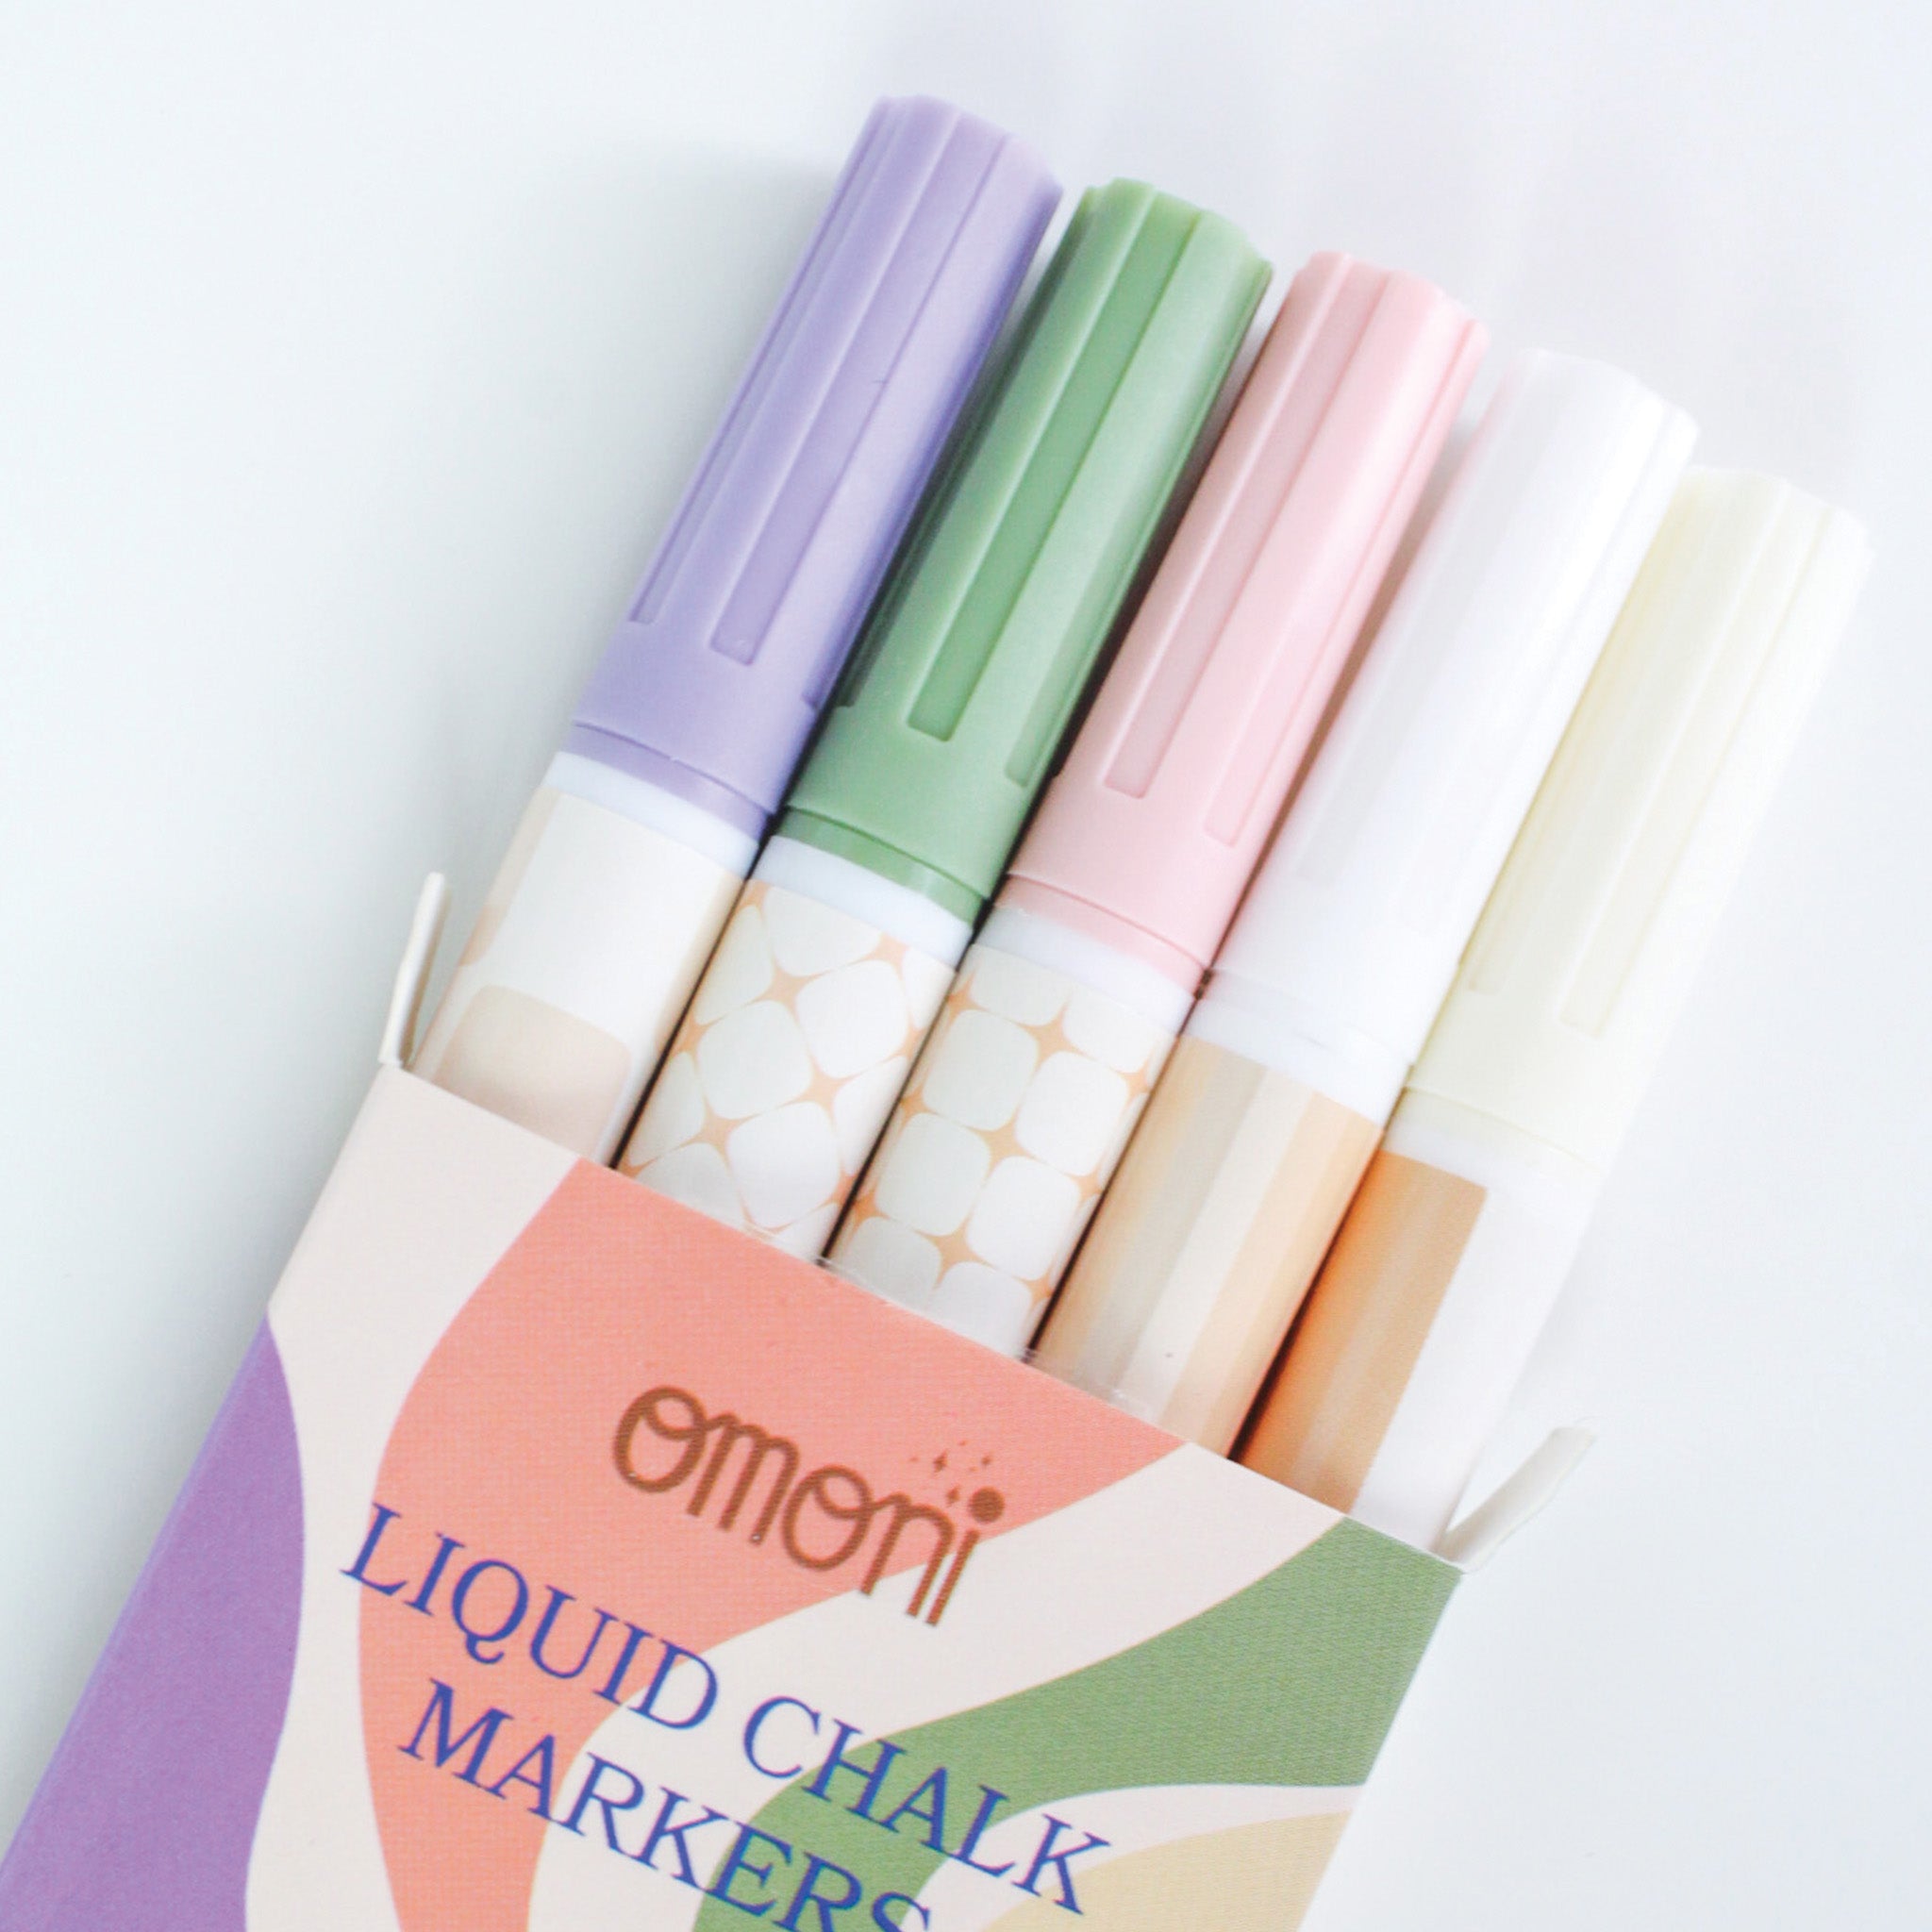 Waterproof Chalk Pens, Waterproof Chalk Markers